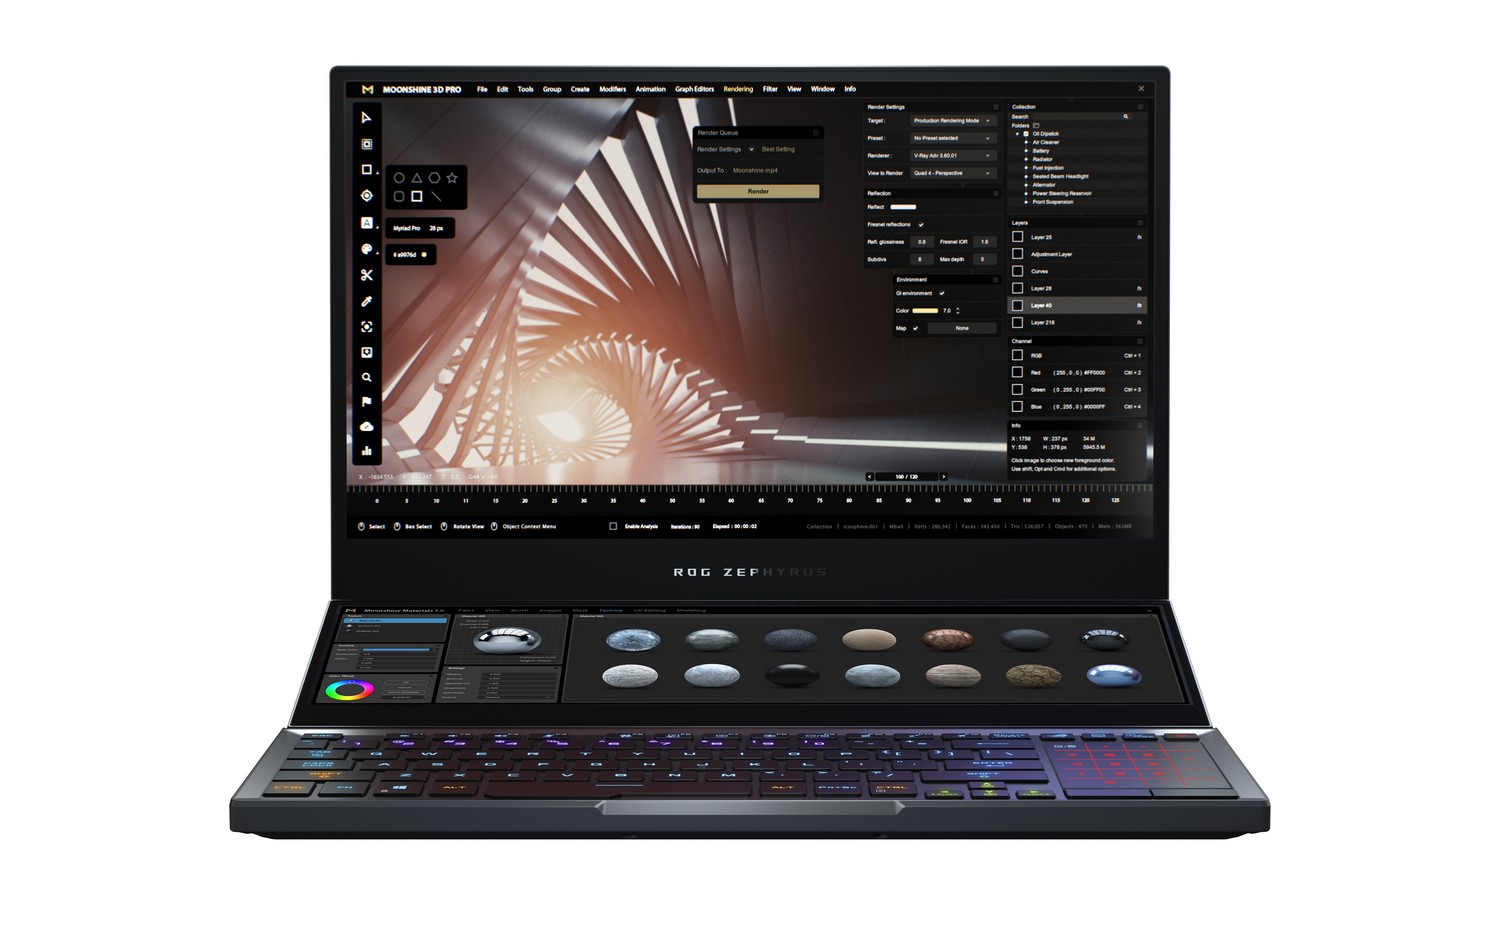 ASUS RoG giới thiệu Zephyrus Duo 15 – Laptop gaming hai màn hình đột phá